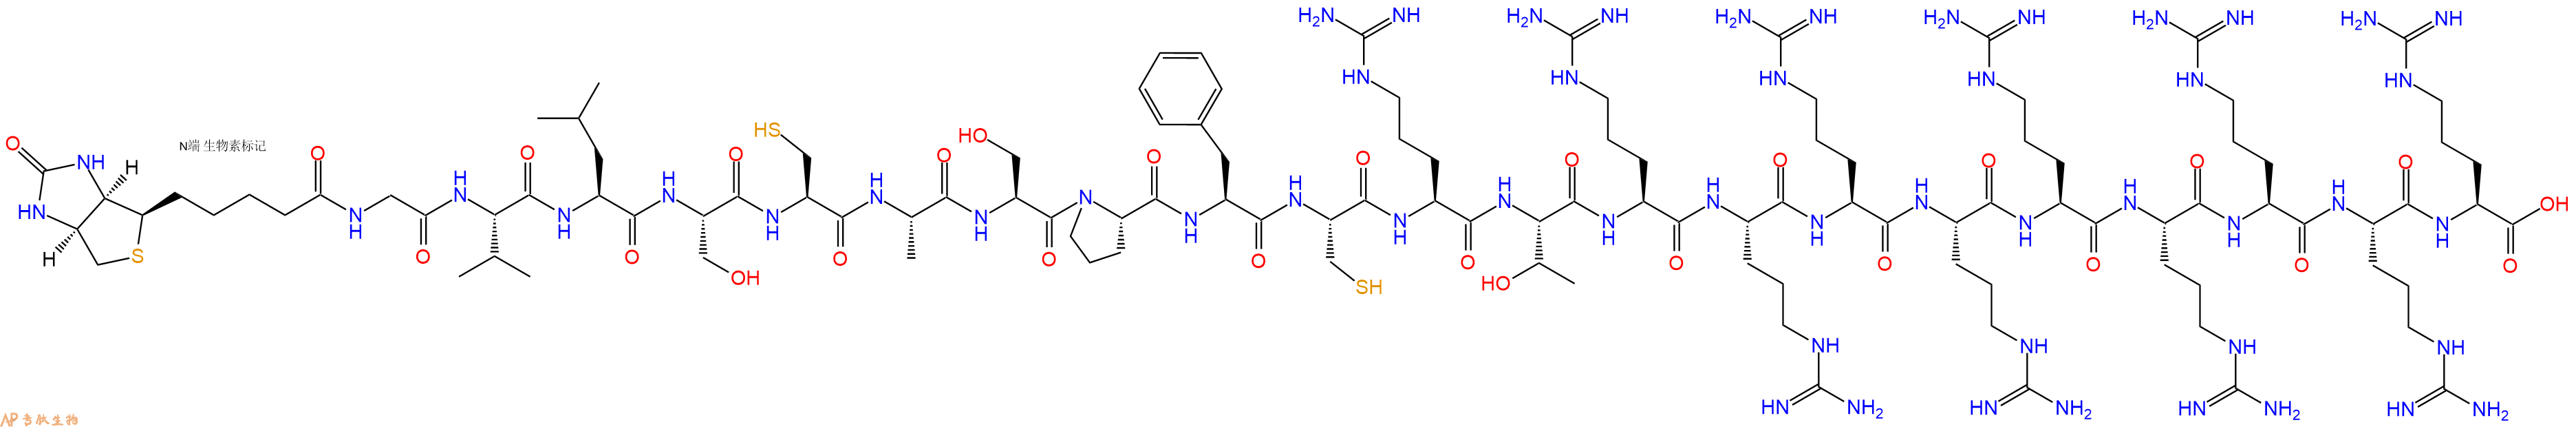 专肽生物产品二十一肽HLKGQNSHYFSFRRRRRRRRR